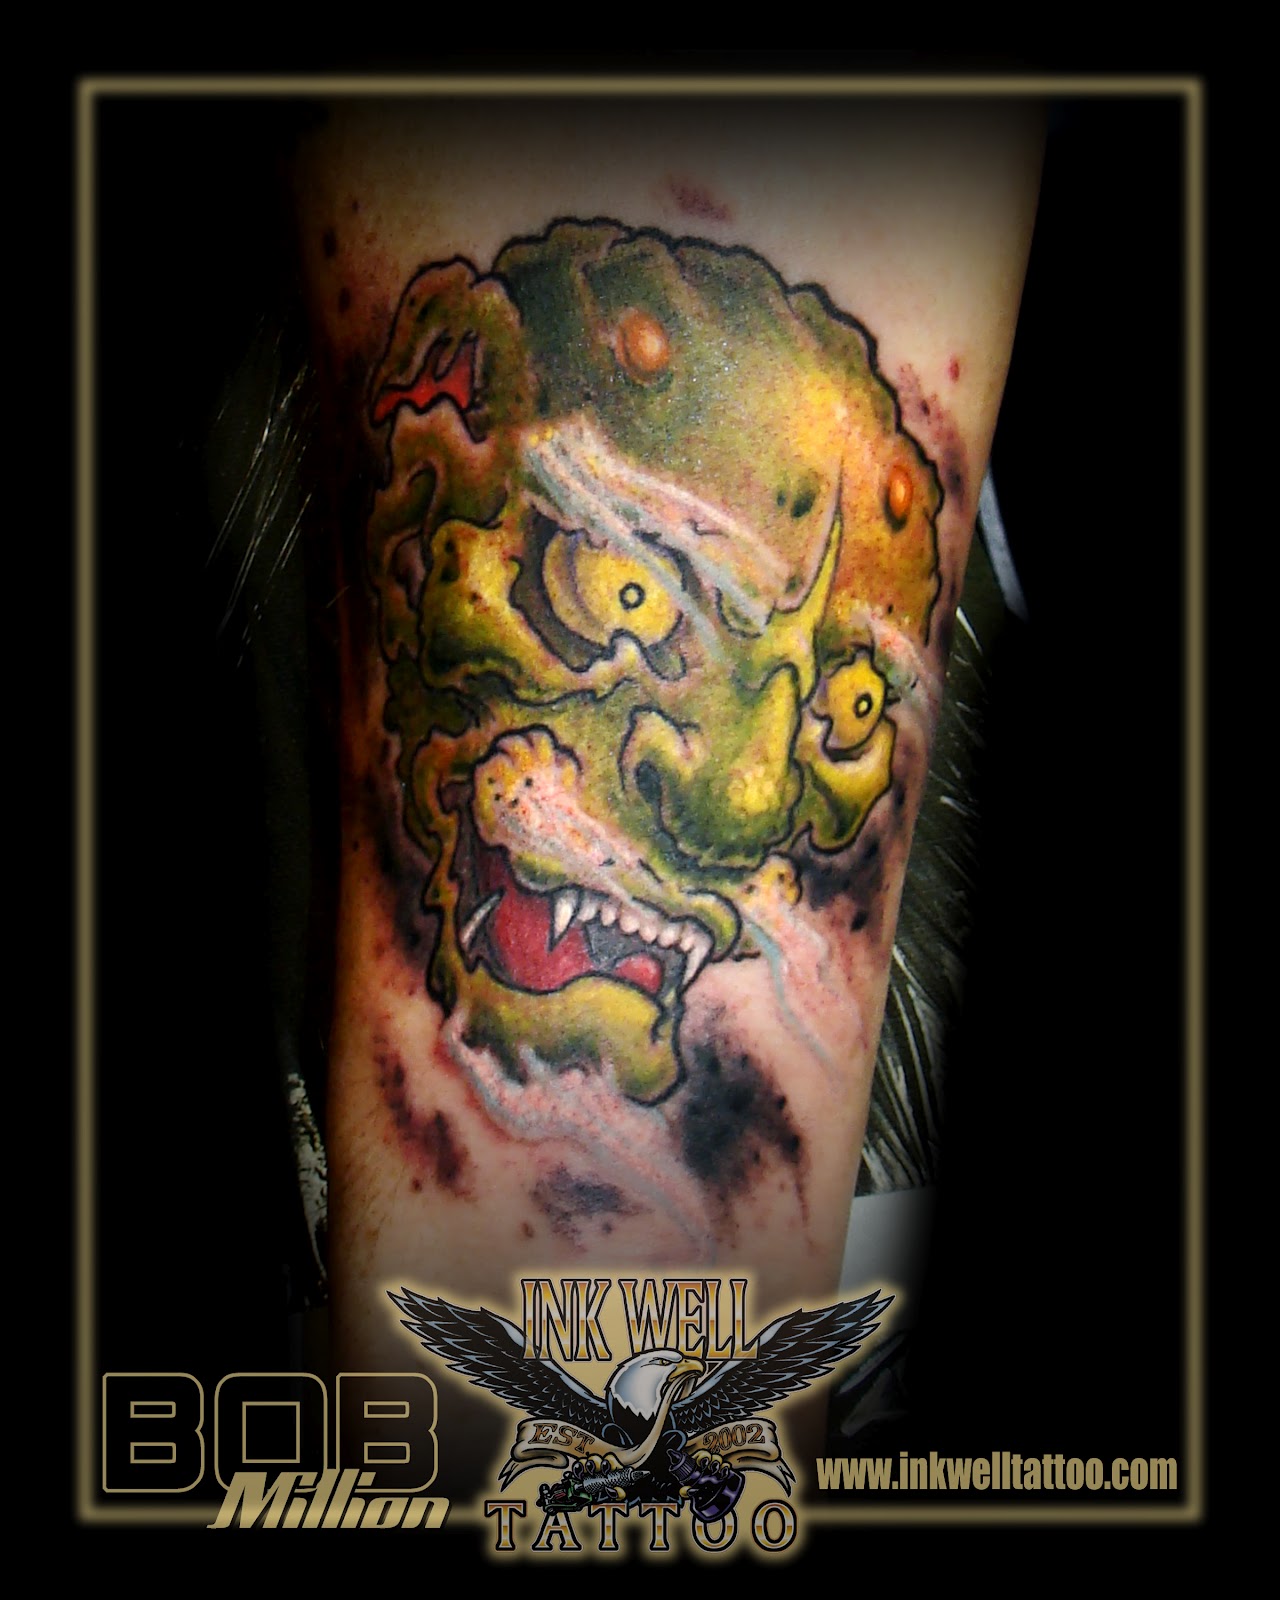 http://3.bp.blogspot.com/-nT0153tK3mI/TzGoMKgm_LI/AAAAAAAAAN8/v41tBl3derg/s1600/bob_million_tattoo_2012_old_man_japanese_demon.jpg